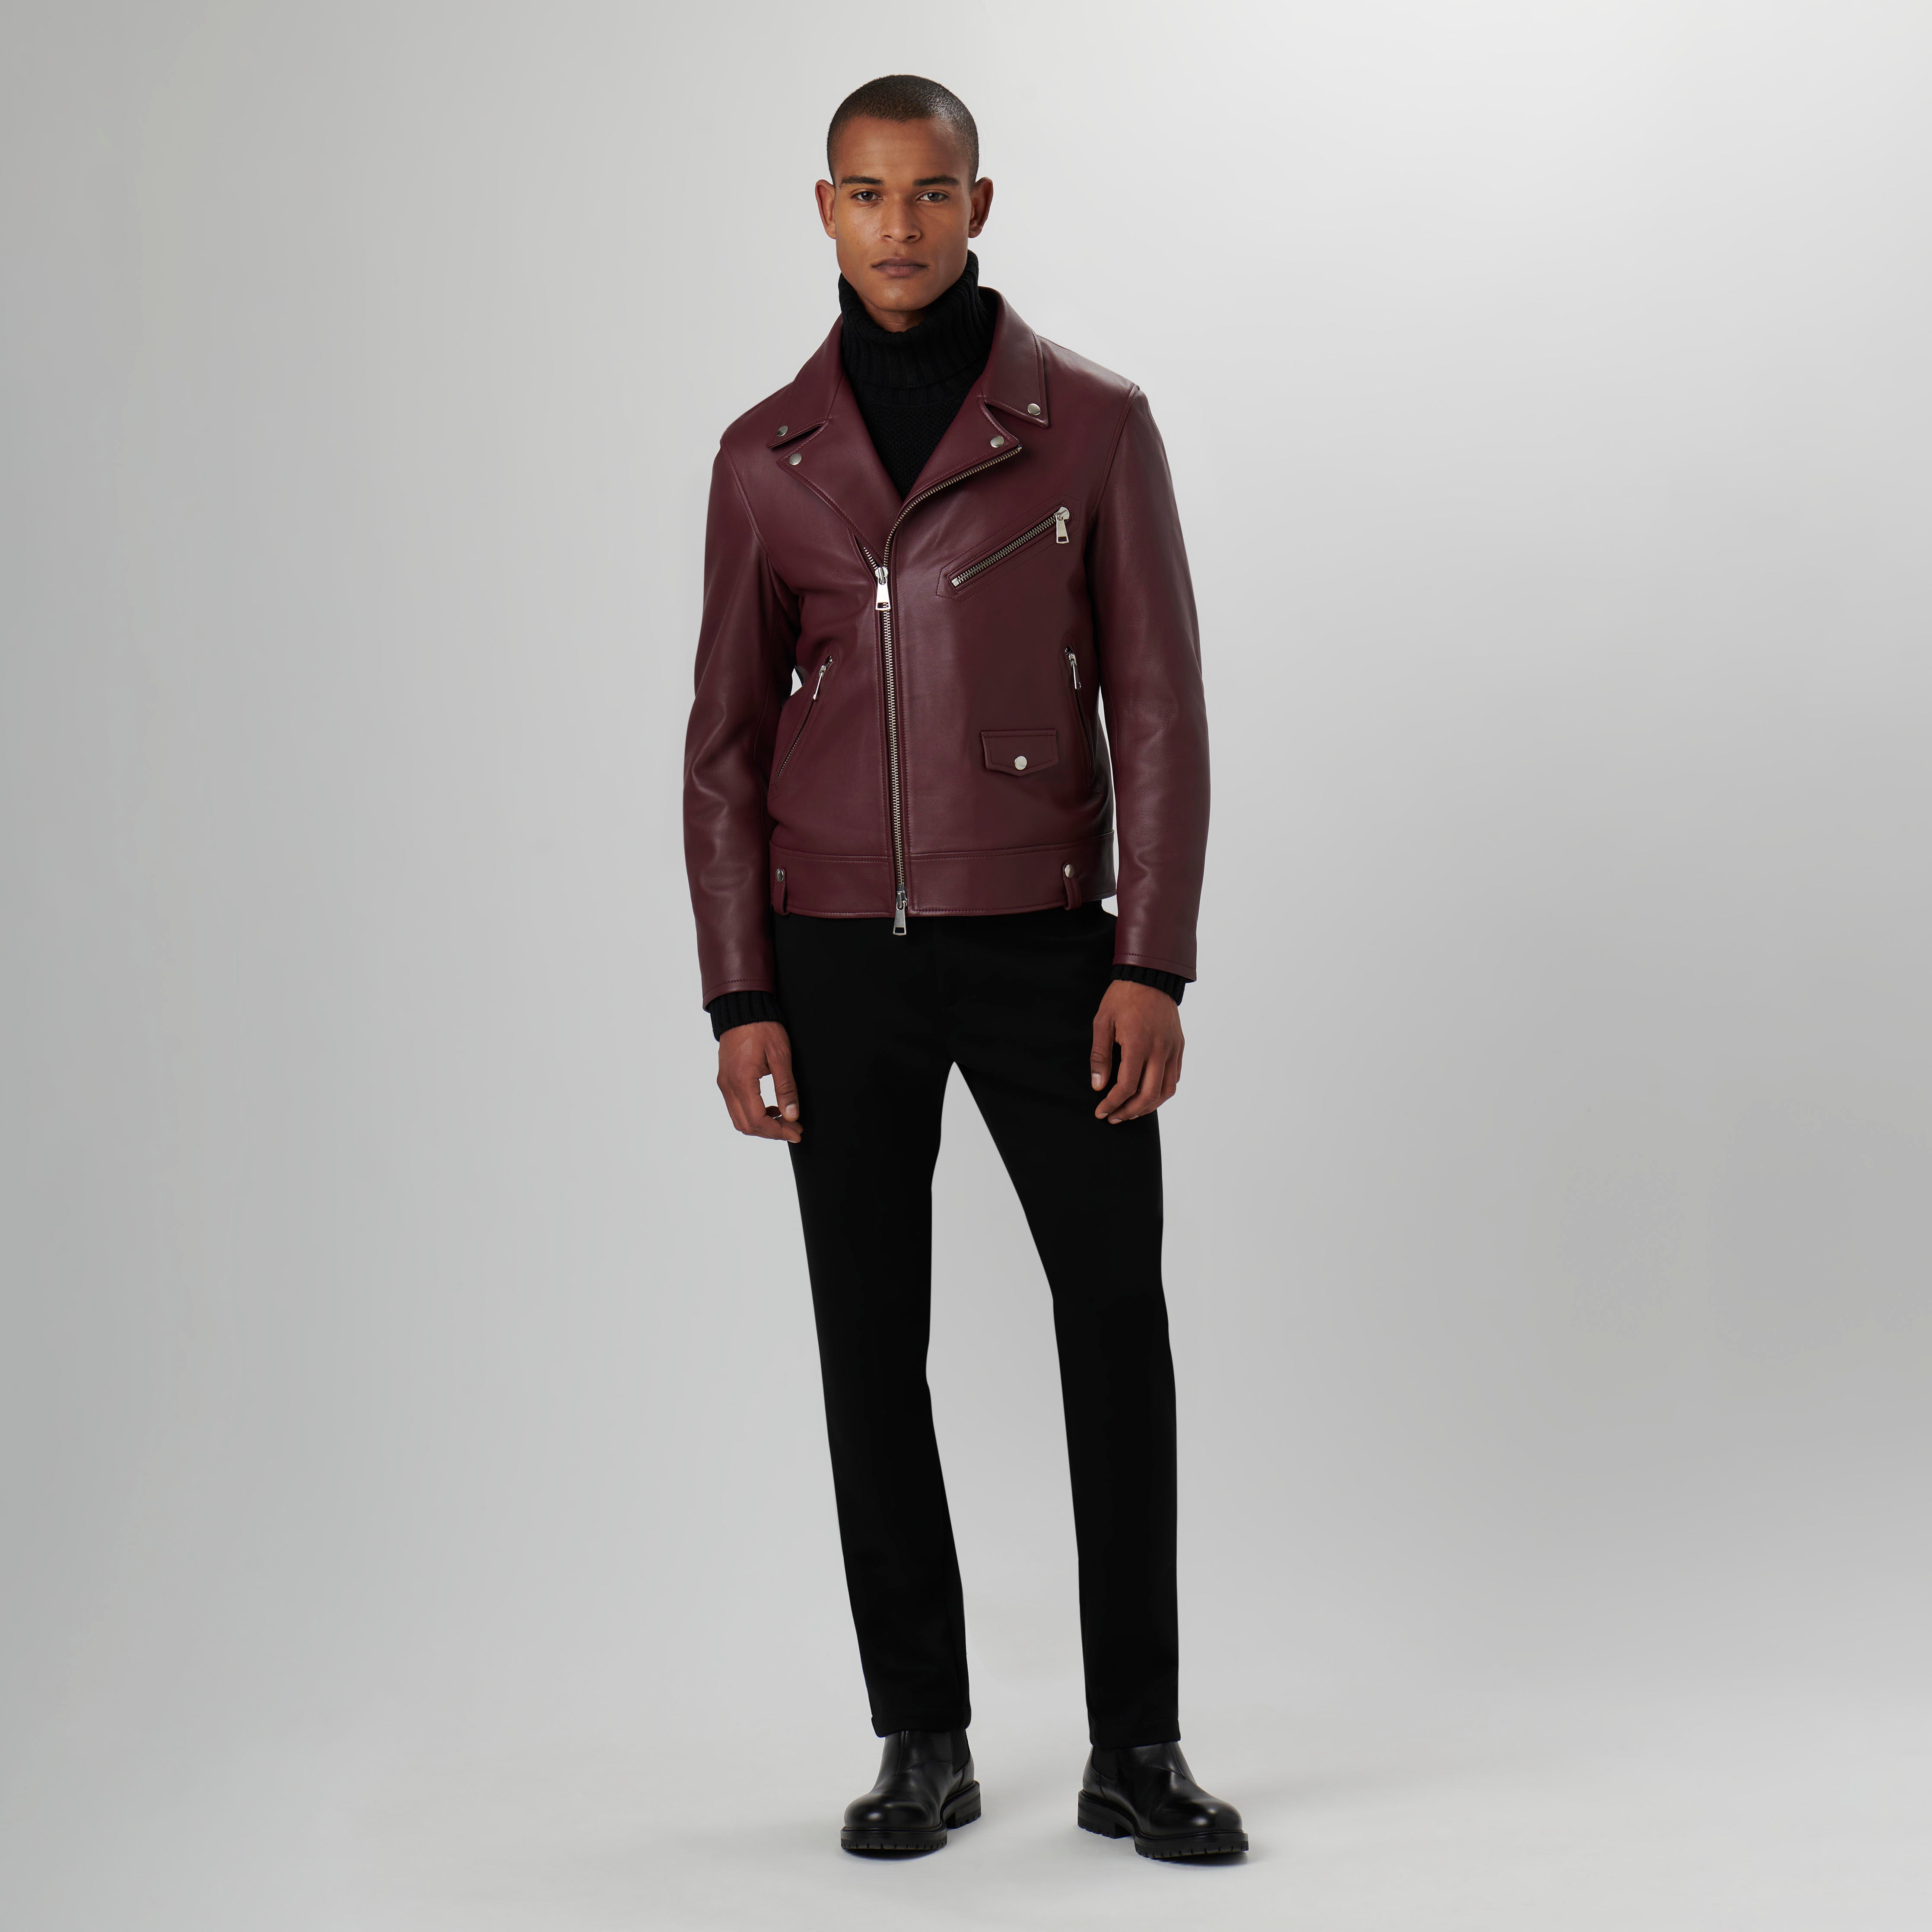 Jacket – BUGATCHI Leather Biker